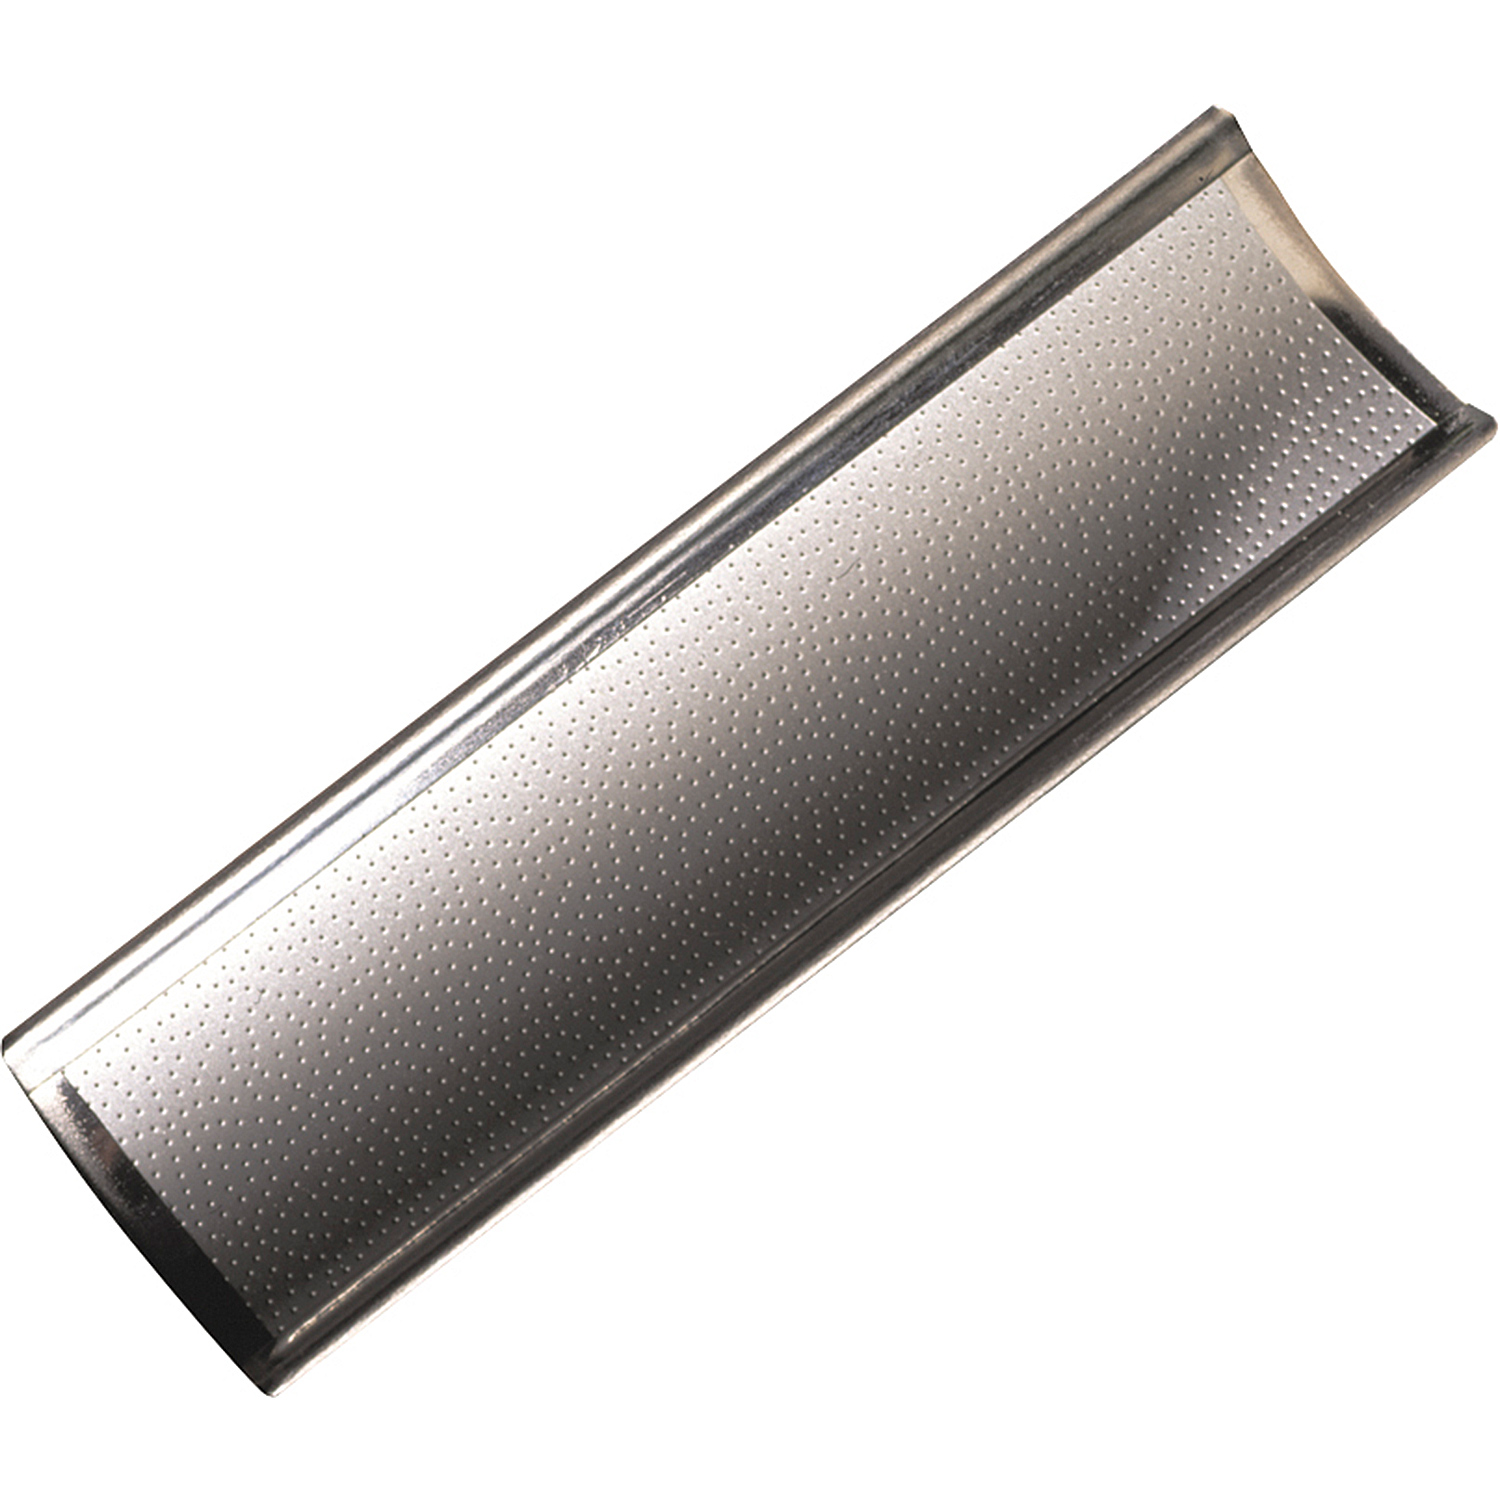 KA0115-SS: Handman stainless steel pomerans vormer #1